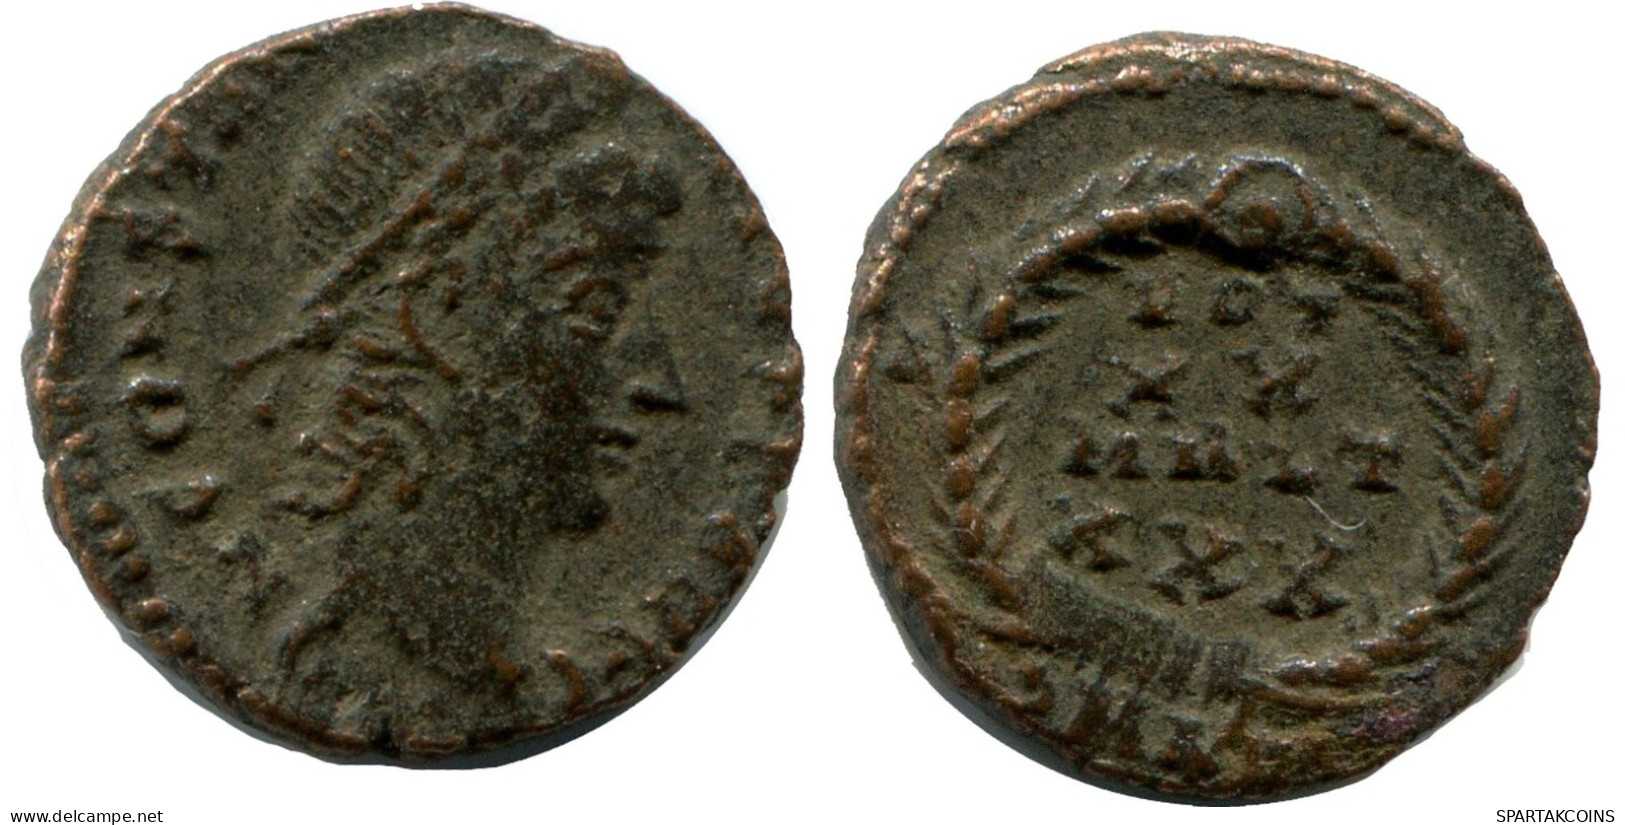 CONSTANTIUS II ALEKSANDRIA FROM THE ROYAL ONTARIO MUSEUM #ANC10497.14.U.A - L'Empire Chrétien (307 à 363)